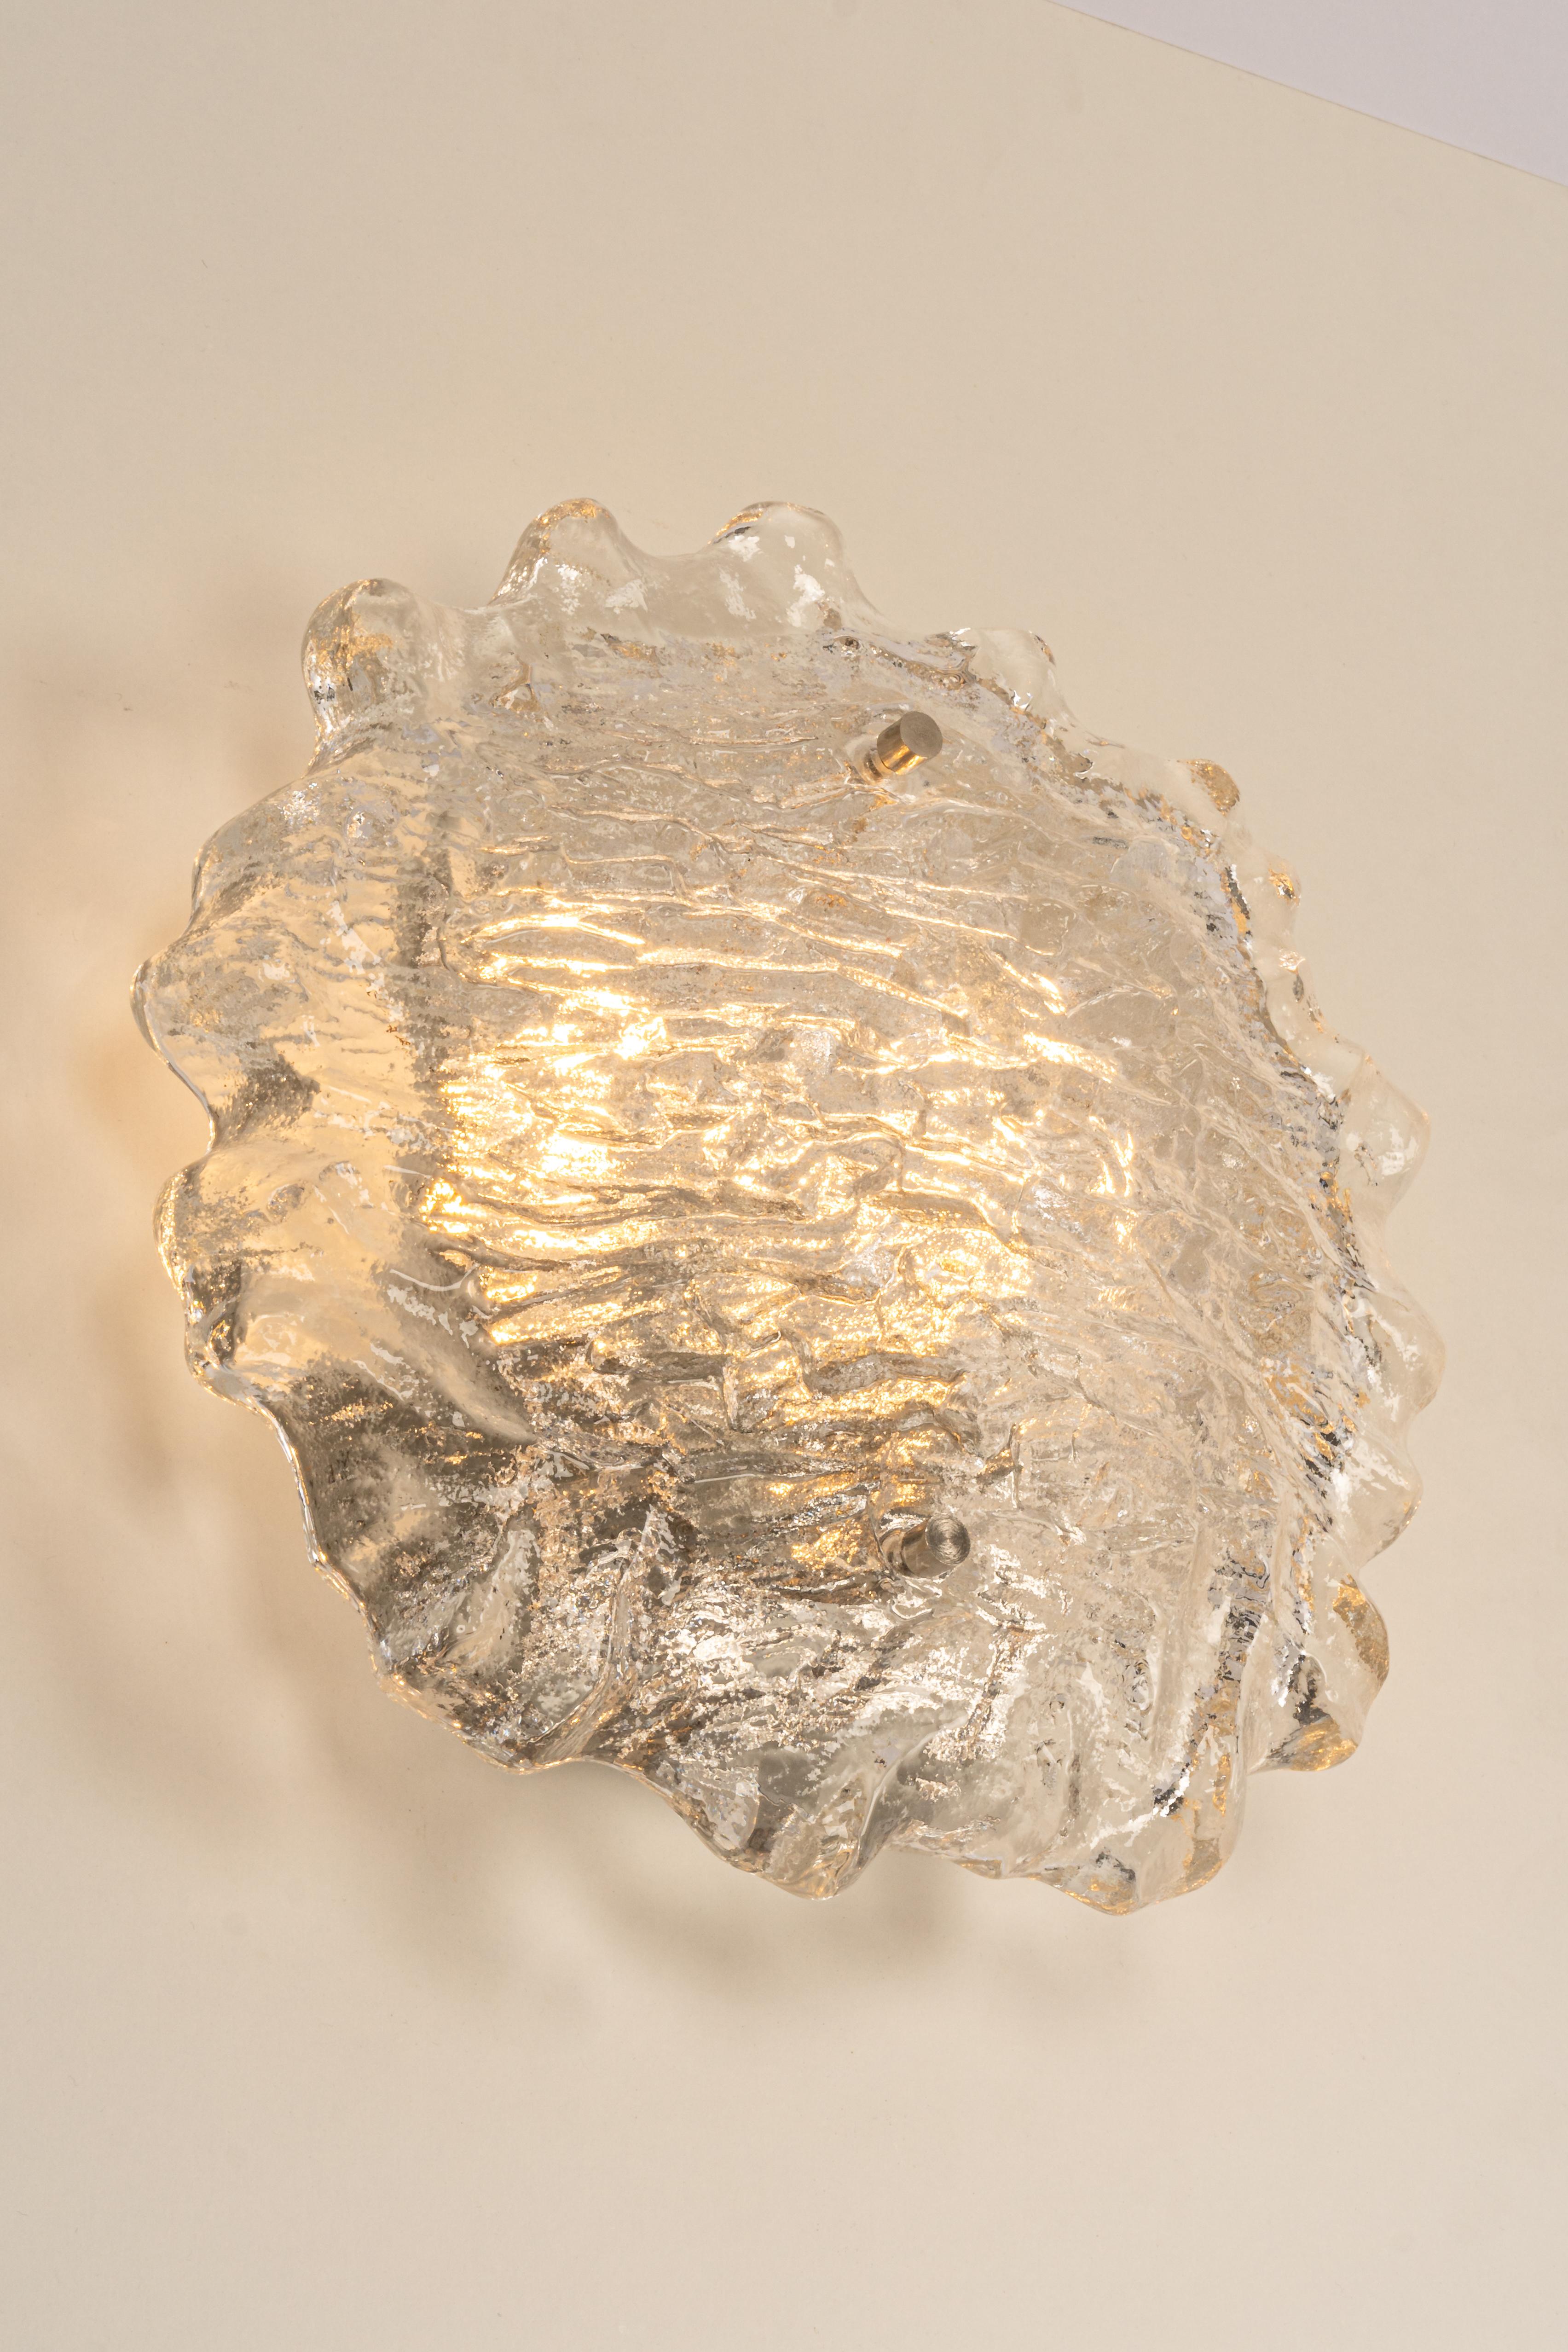 Exklusive Sputnik-Wandleuchte aus Kristallglas von Peil & Putzler, Deutschland, 1970er Jahre 
Wunderbarer Lichteffekt.
Äußerst selten!

Hochwertig und in sehr gutem Zustand. Gereinigt, gut verkabelt und einsatzbereit. 

Jede Leuchte benötigt 2